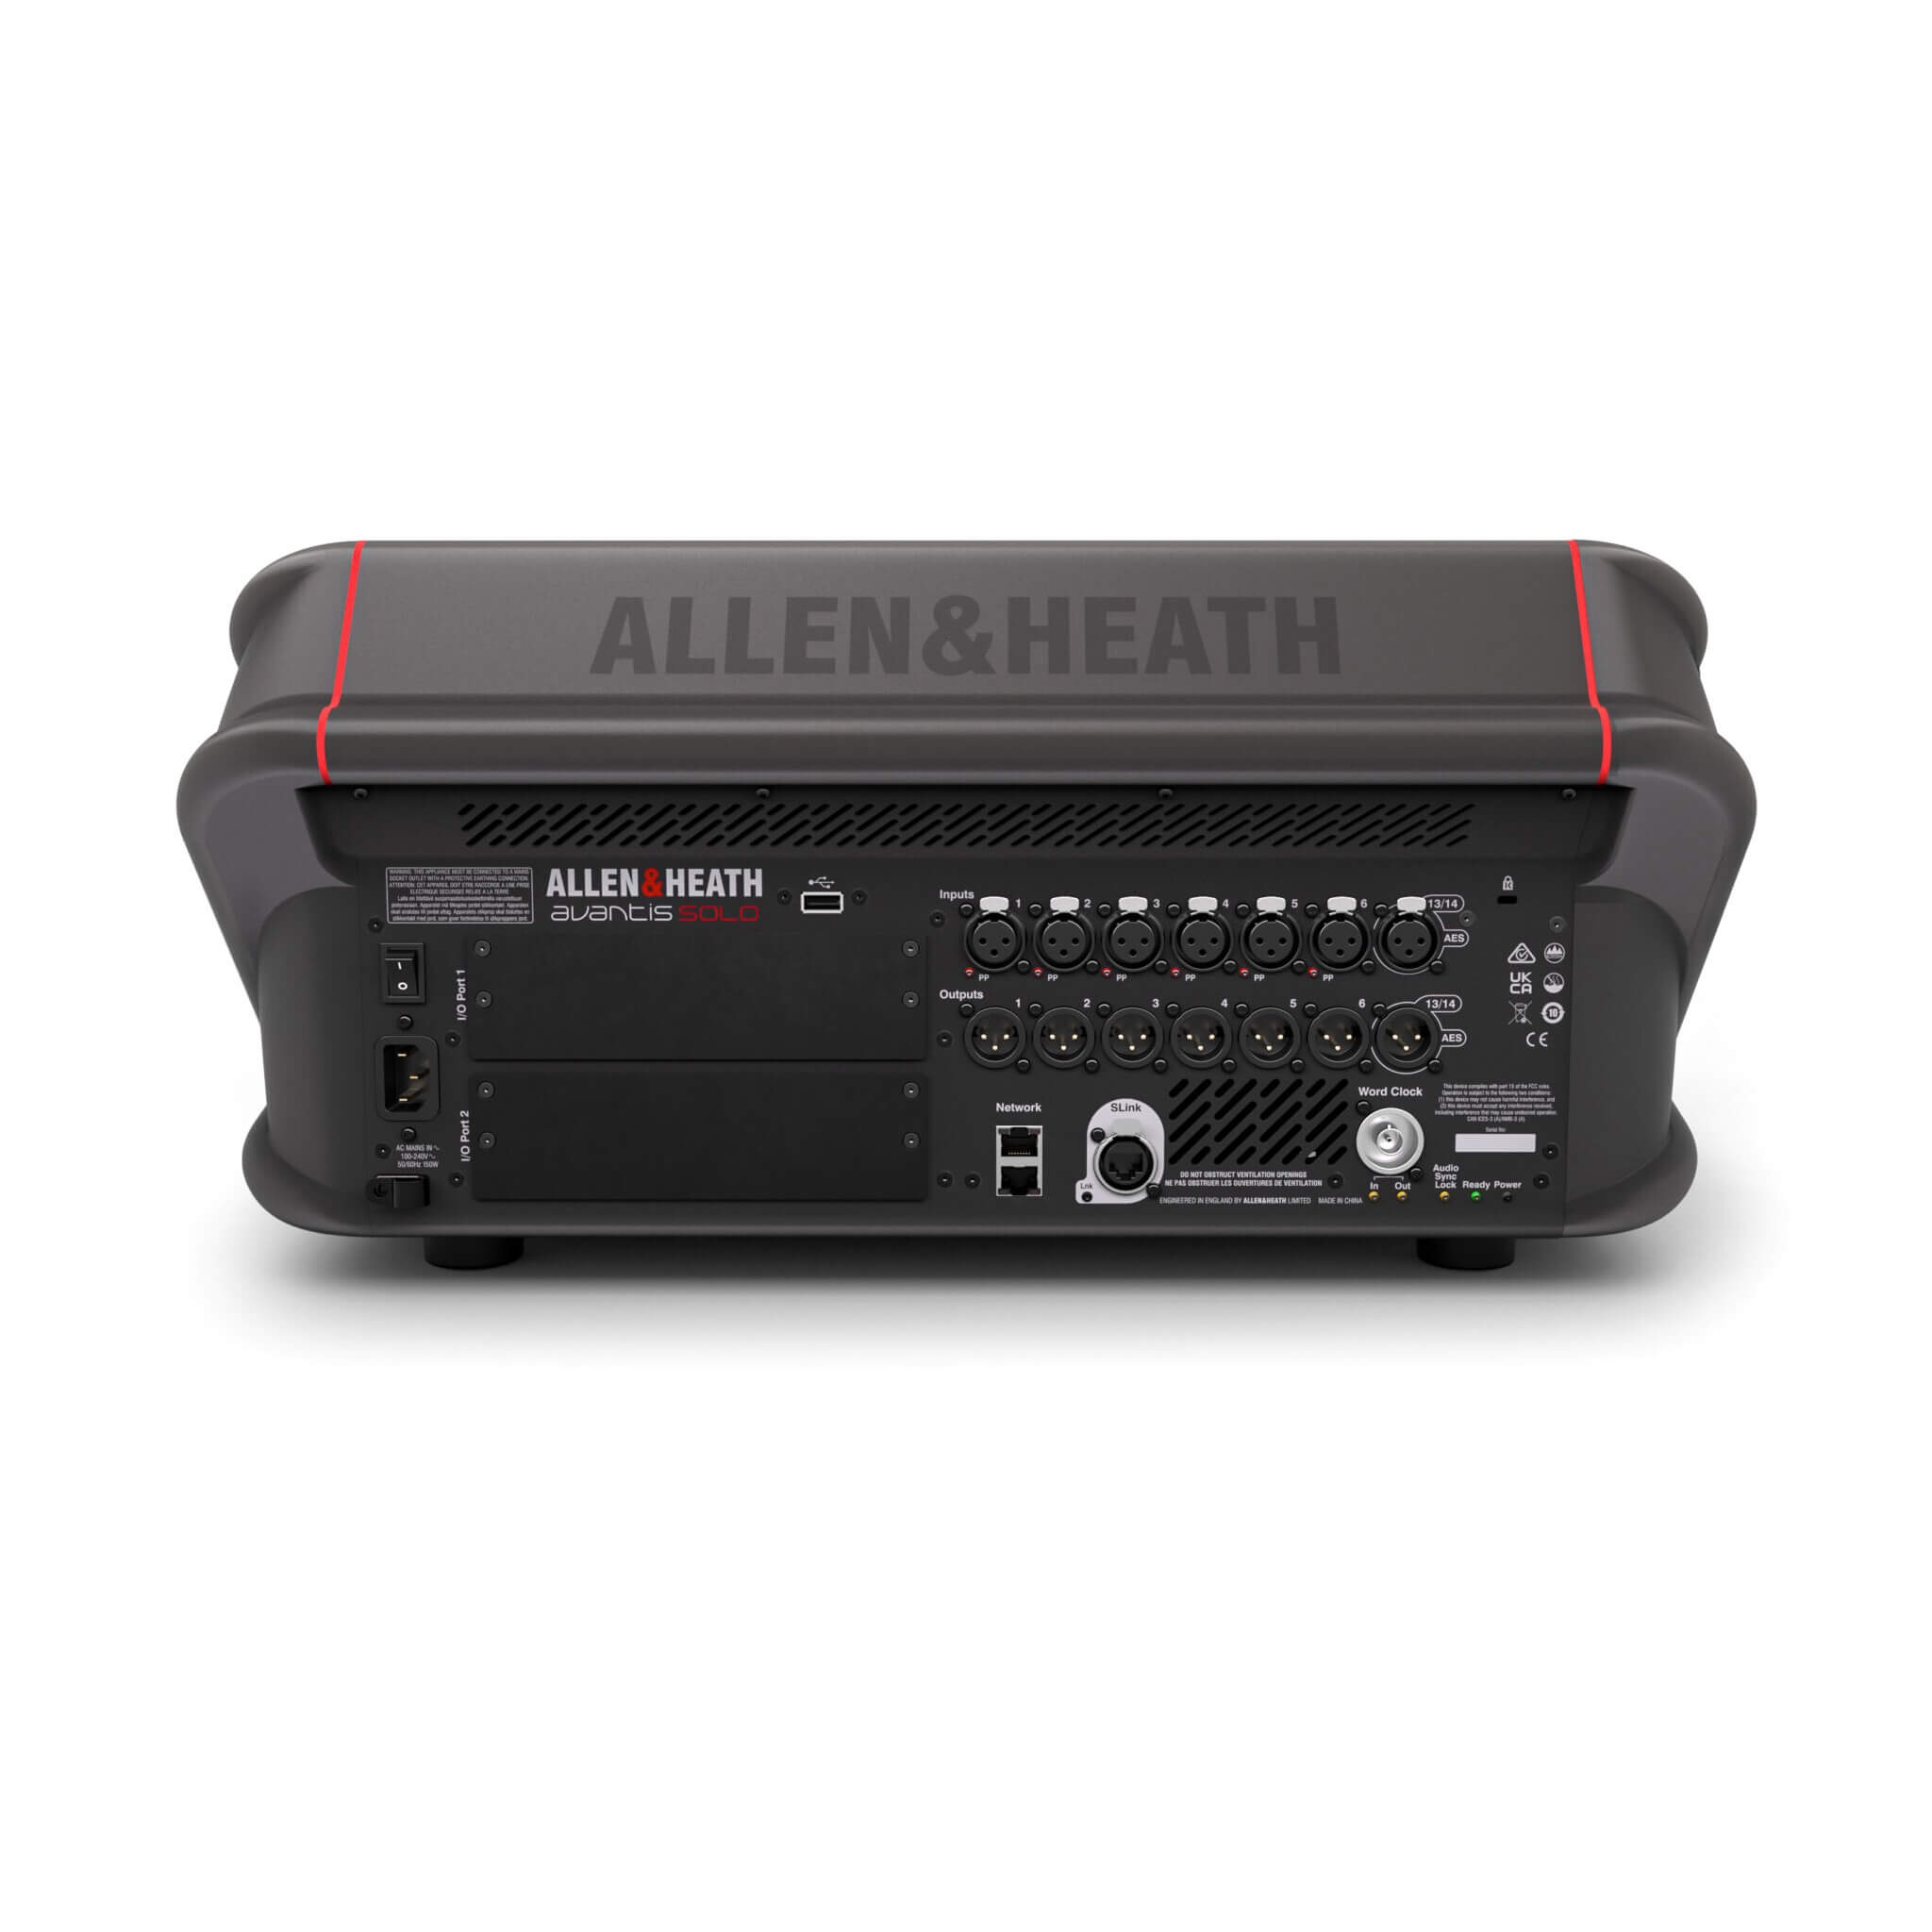 Allen & Heath Avantis Solo - 64-channel 96kHz Digital Mixer, rear